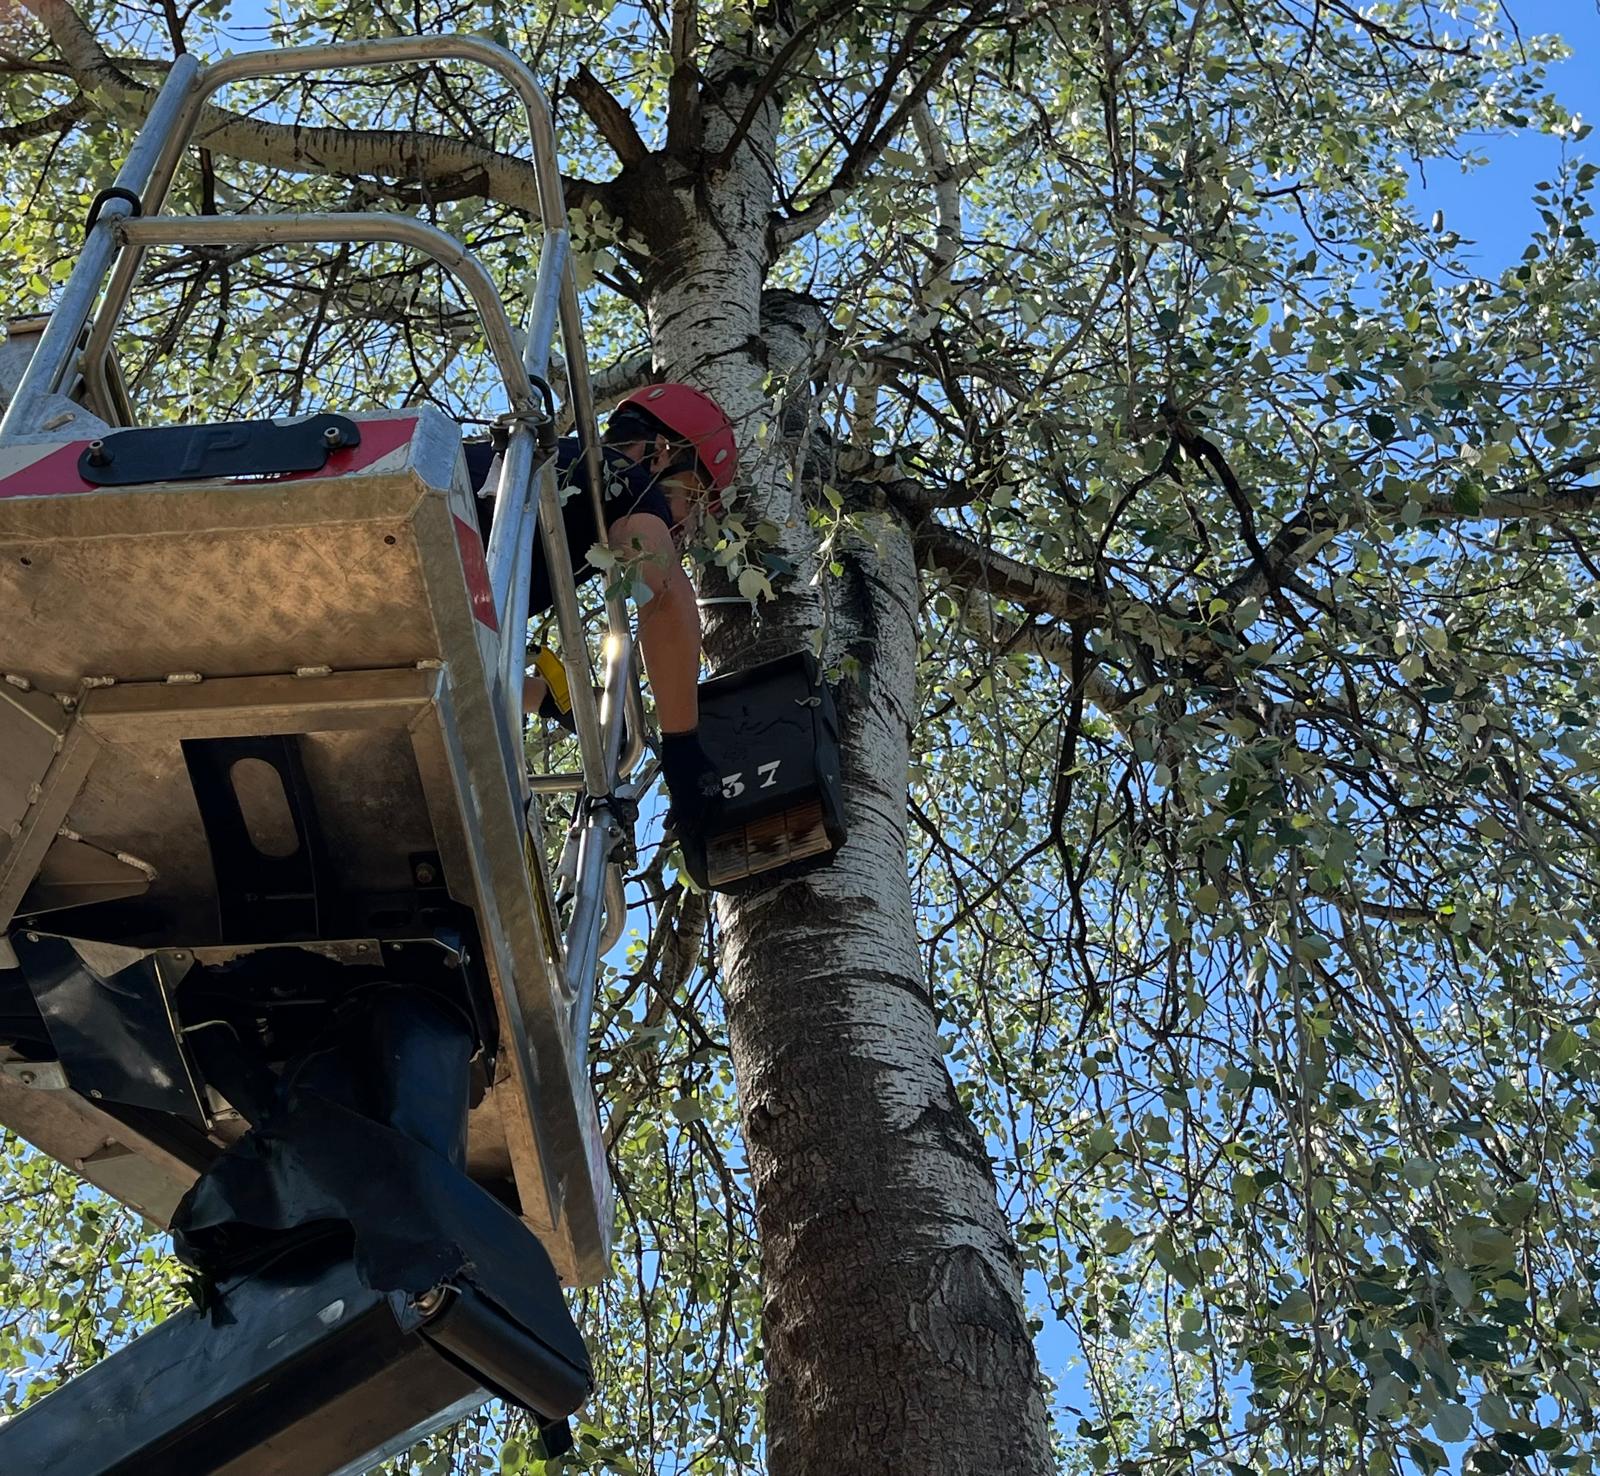 Instalando cajas refugio para murciélagos, en lo alto de un árbol. Foto: Ayto. de Murcia